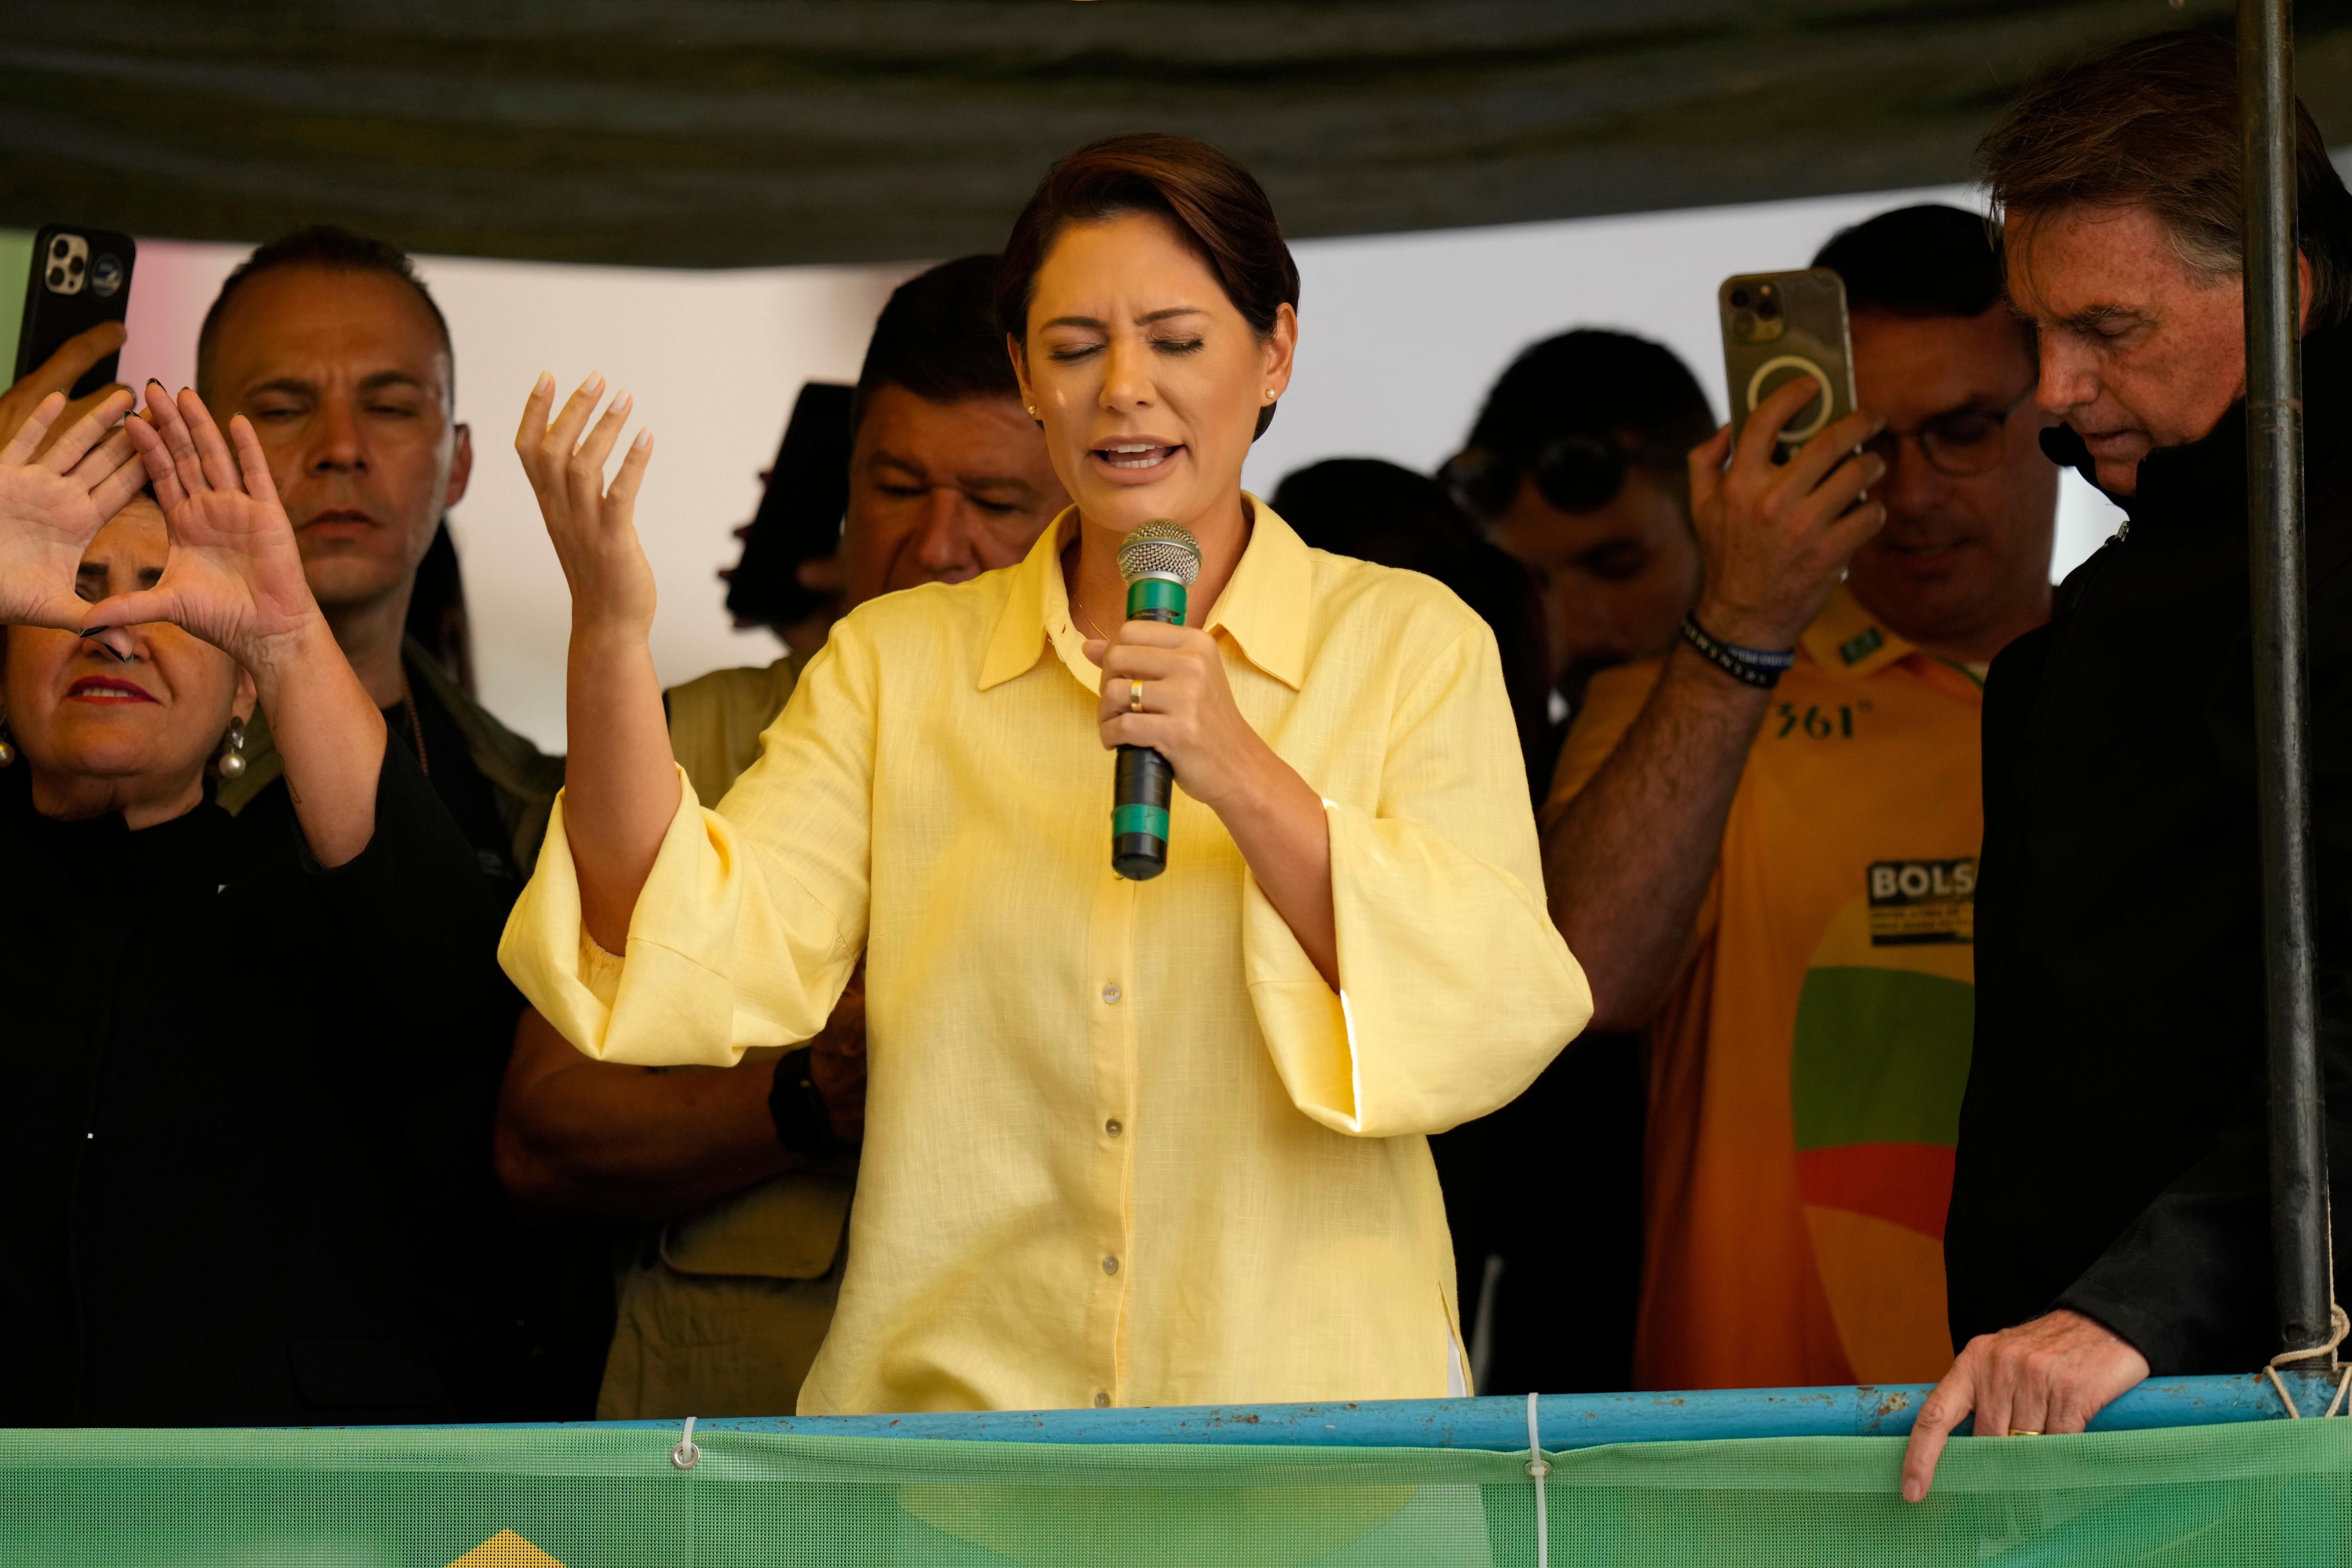 Por que Bolsonaro insiste na candidatura de Damares ao Senado